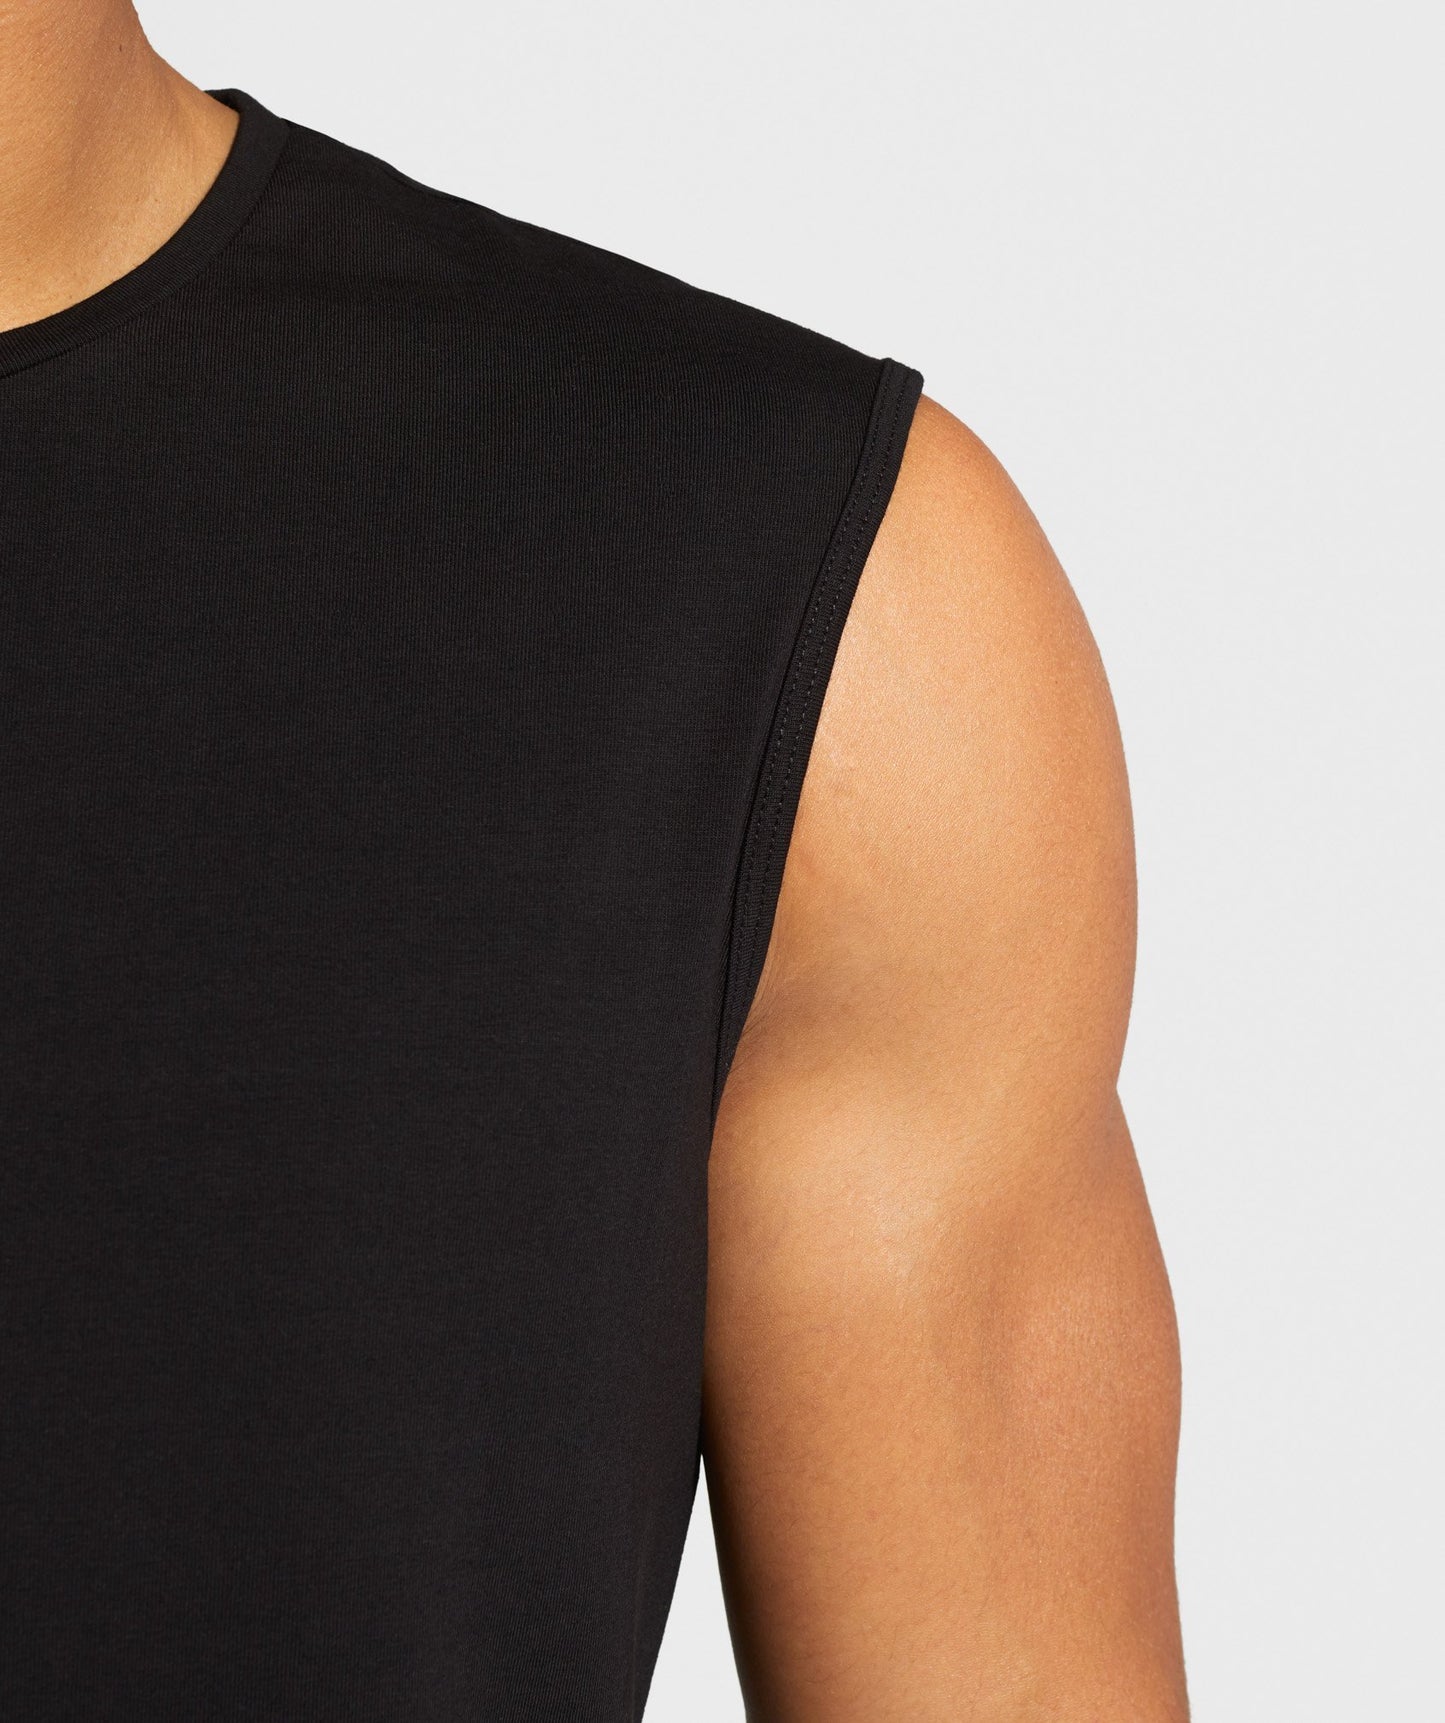 Gymshark TPT Sleeveless T-shirt - Black